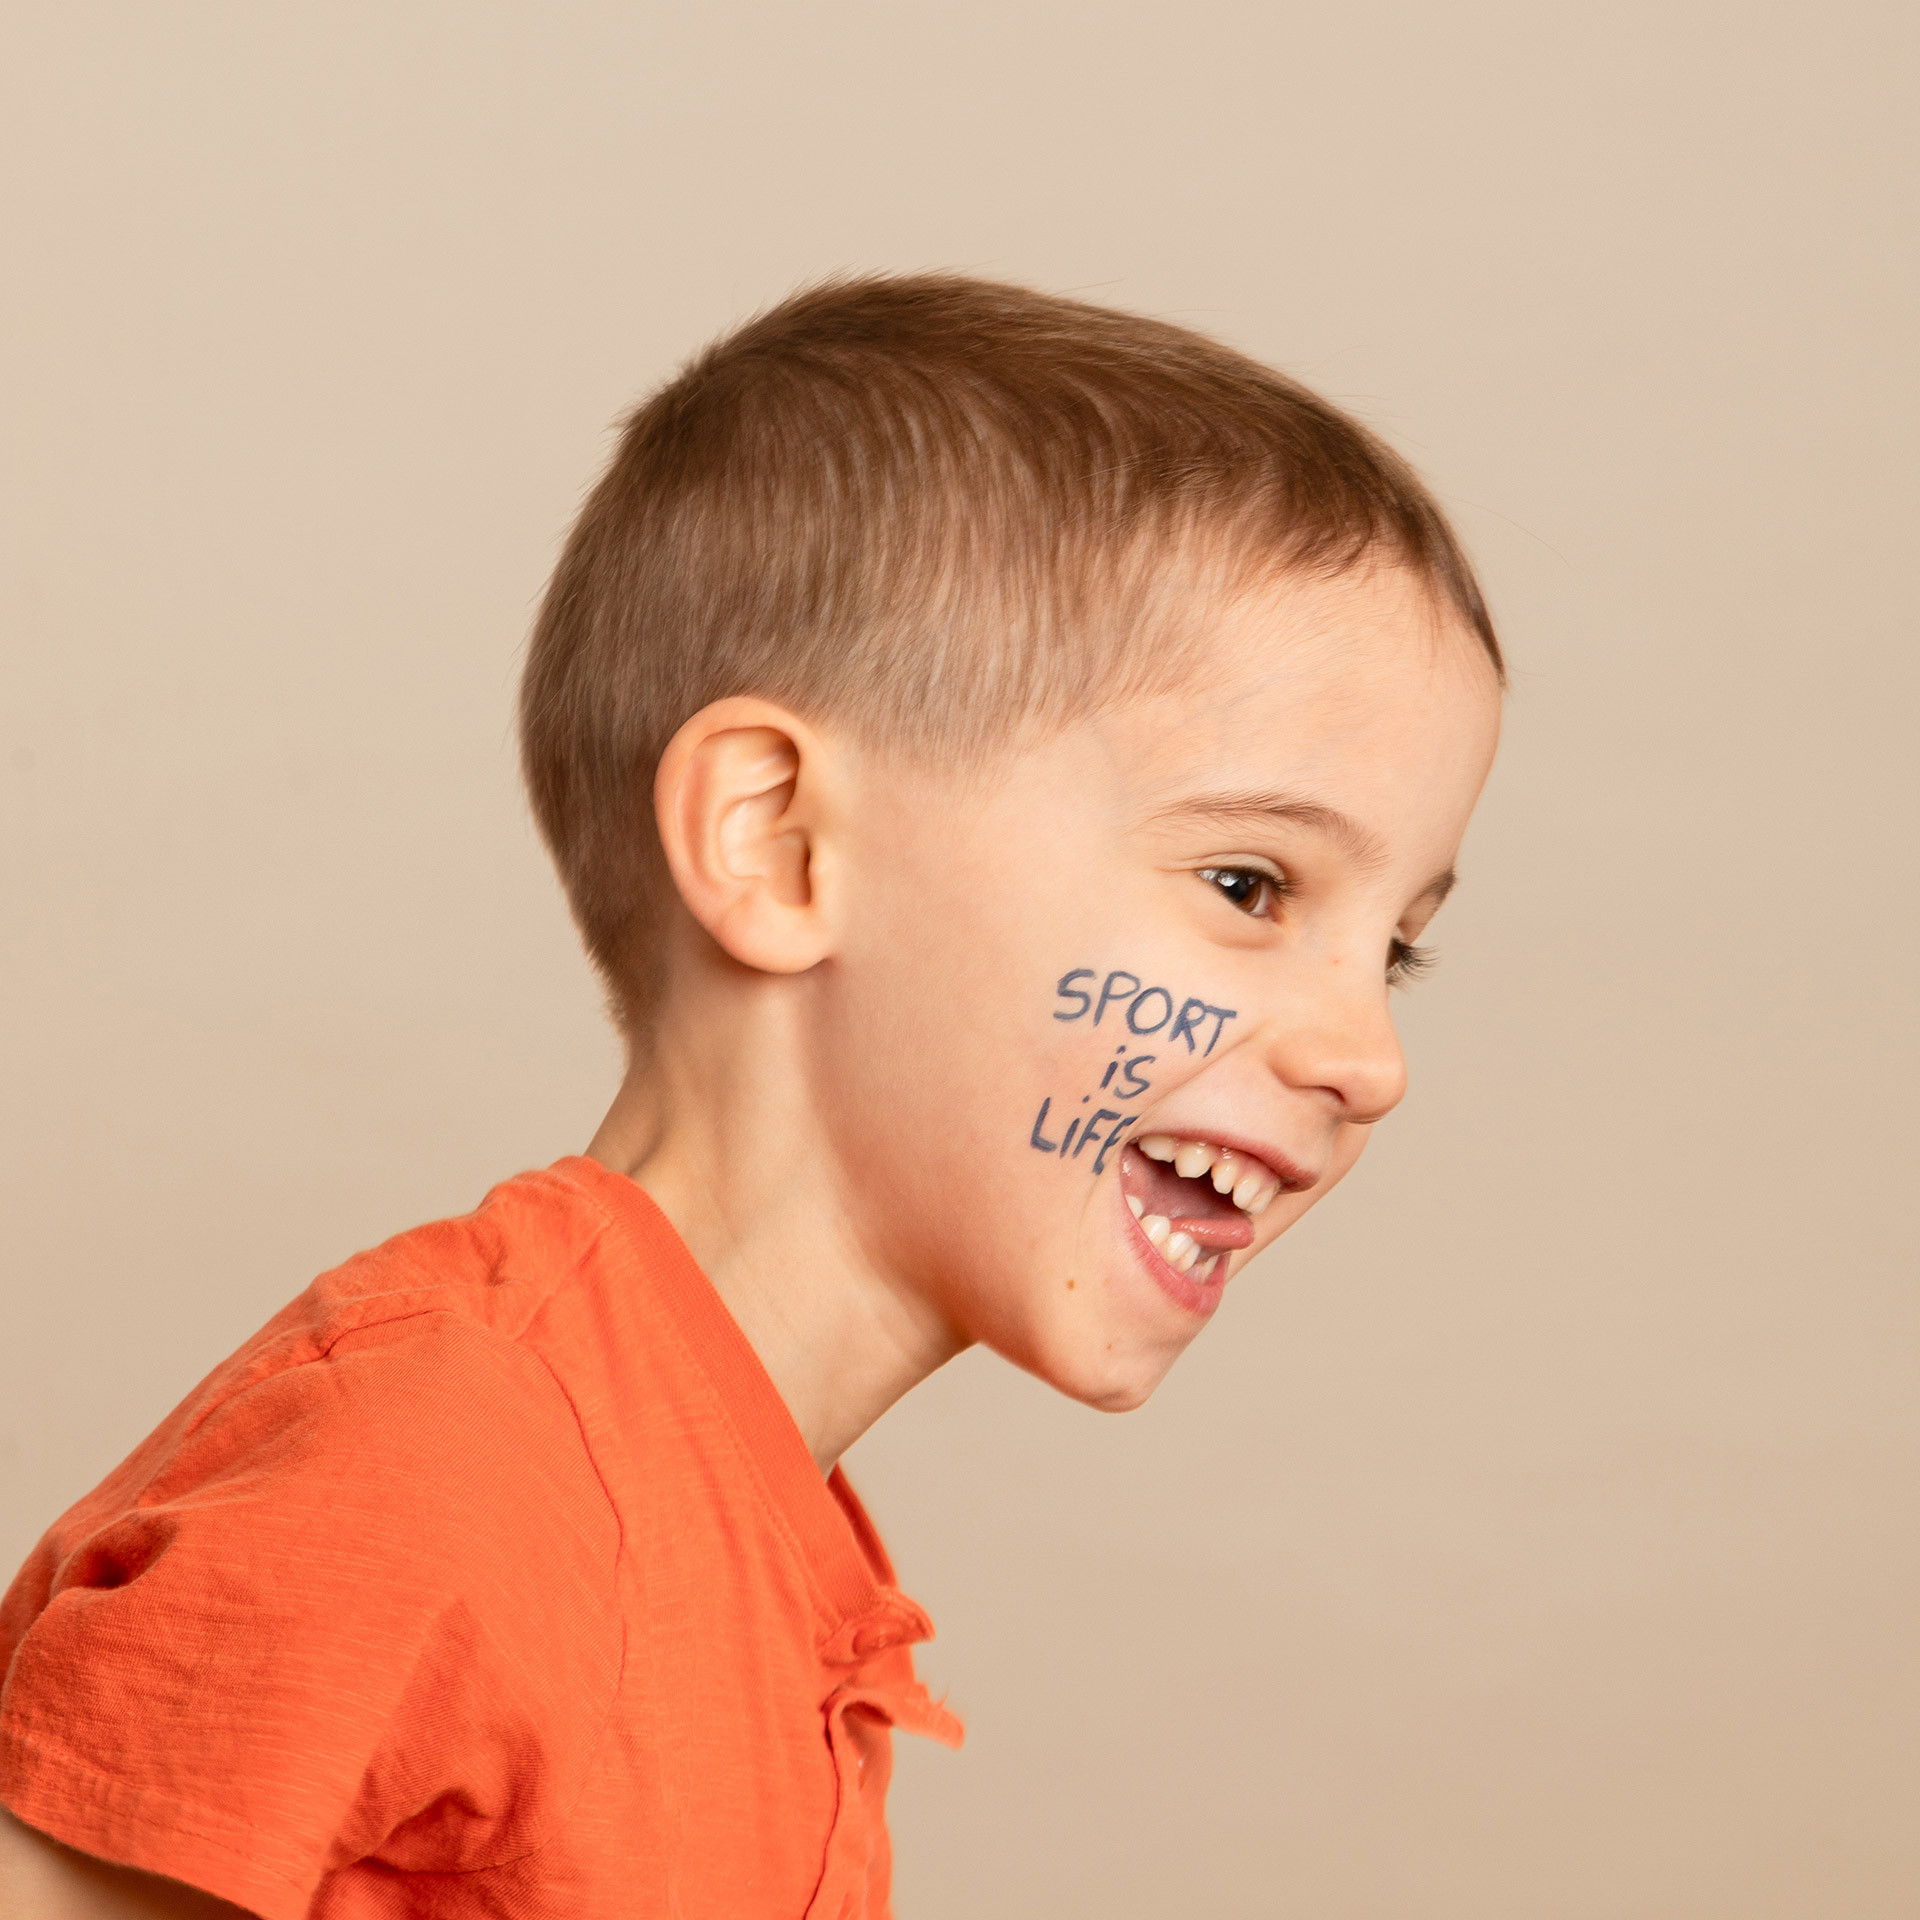 Maquillage Enfant Sportif avec feutre de tatouage temporaire bleu foncé